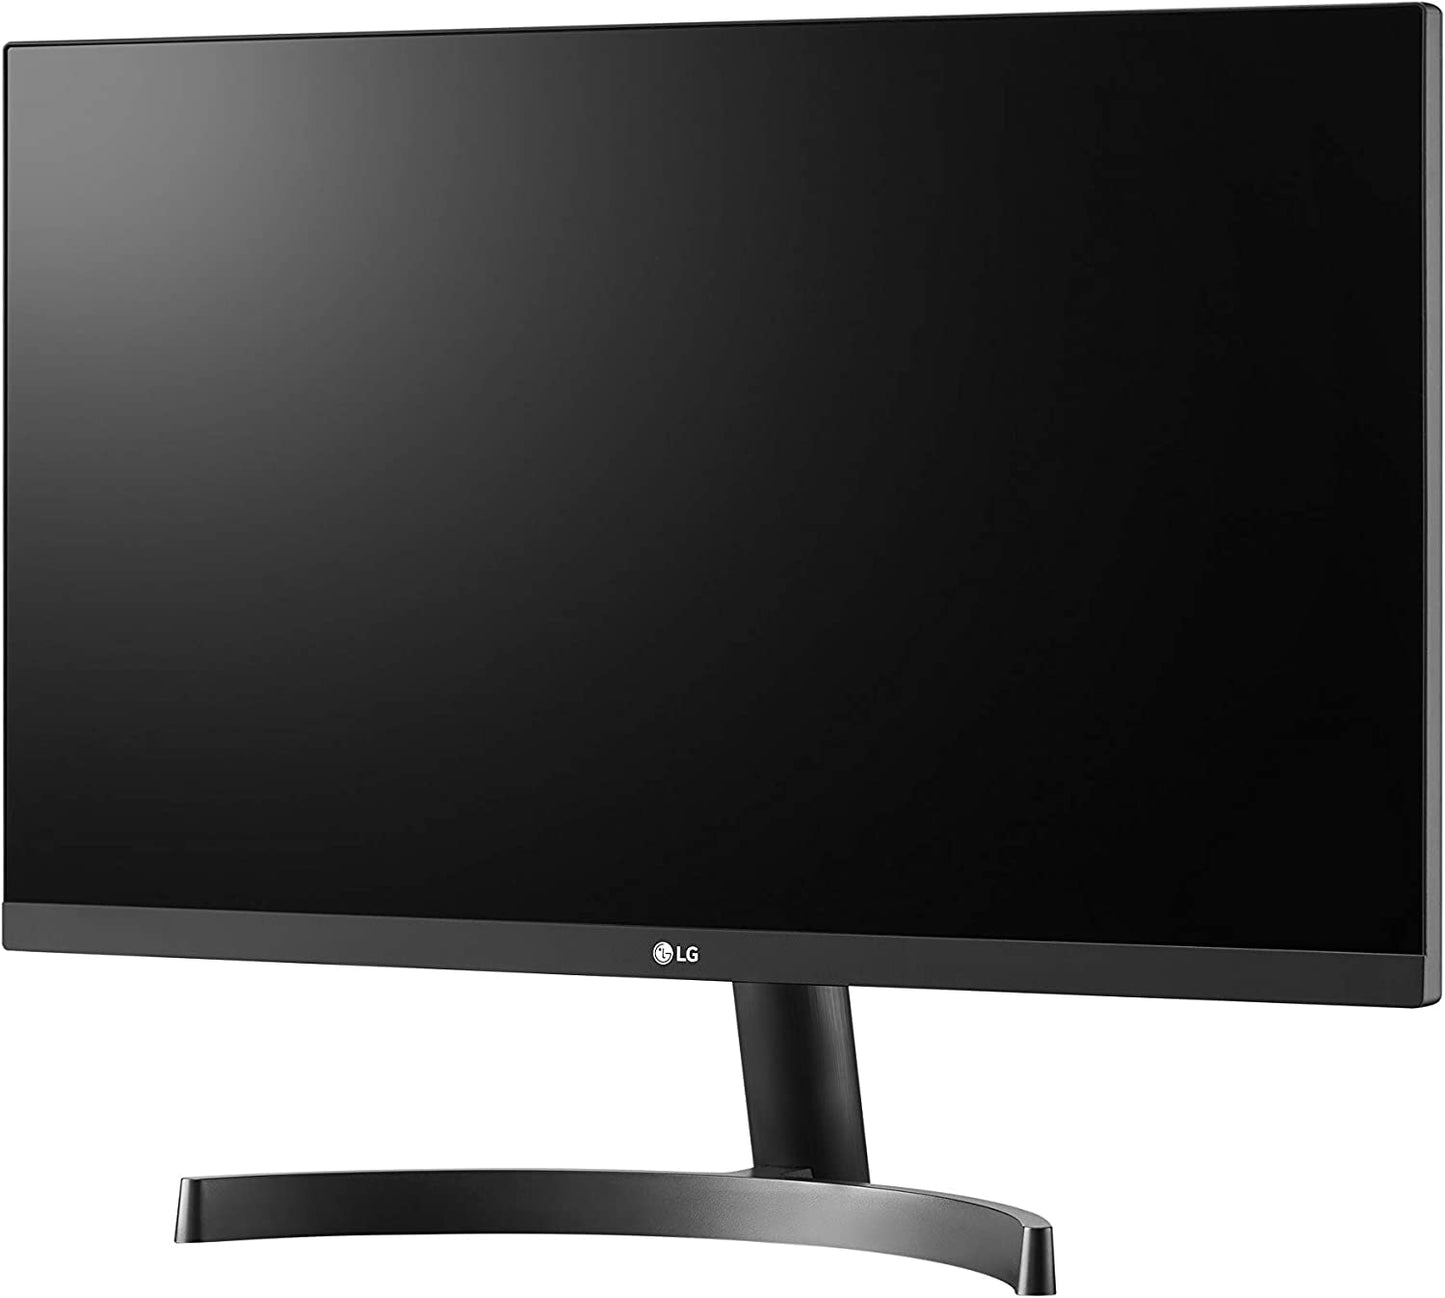 LG 32 inch Full HD LED Monitor